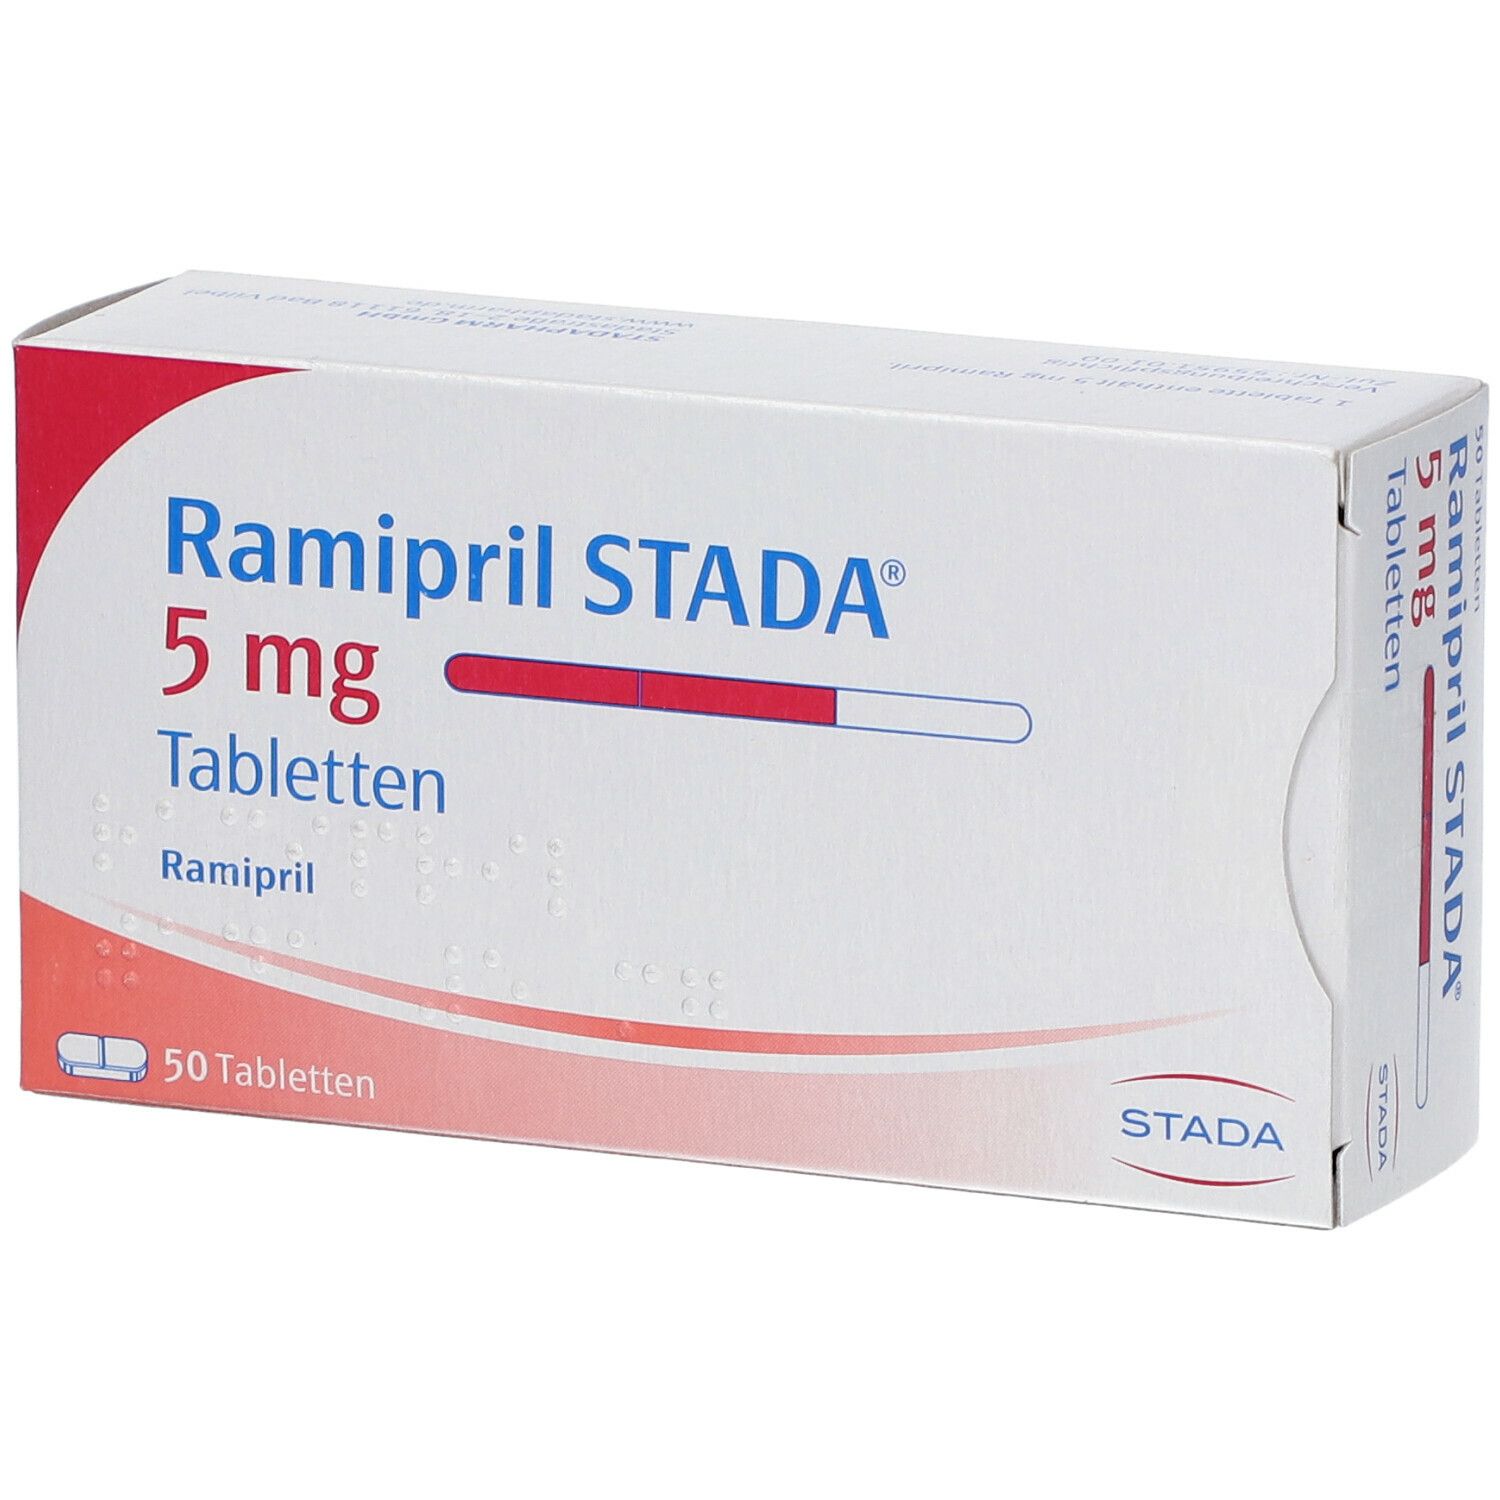 Ramipril STADA® 5 mg